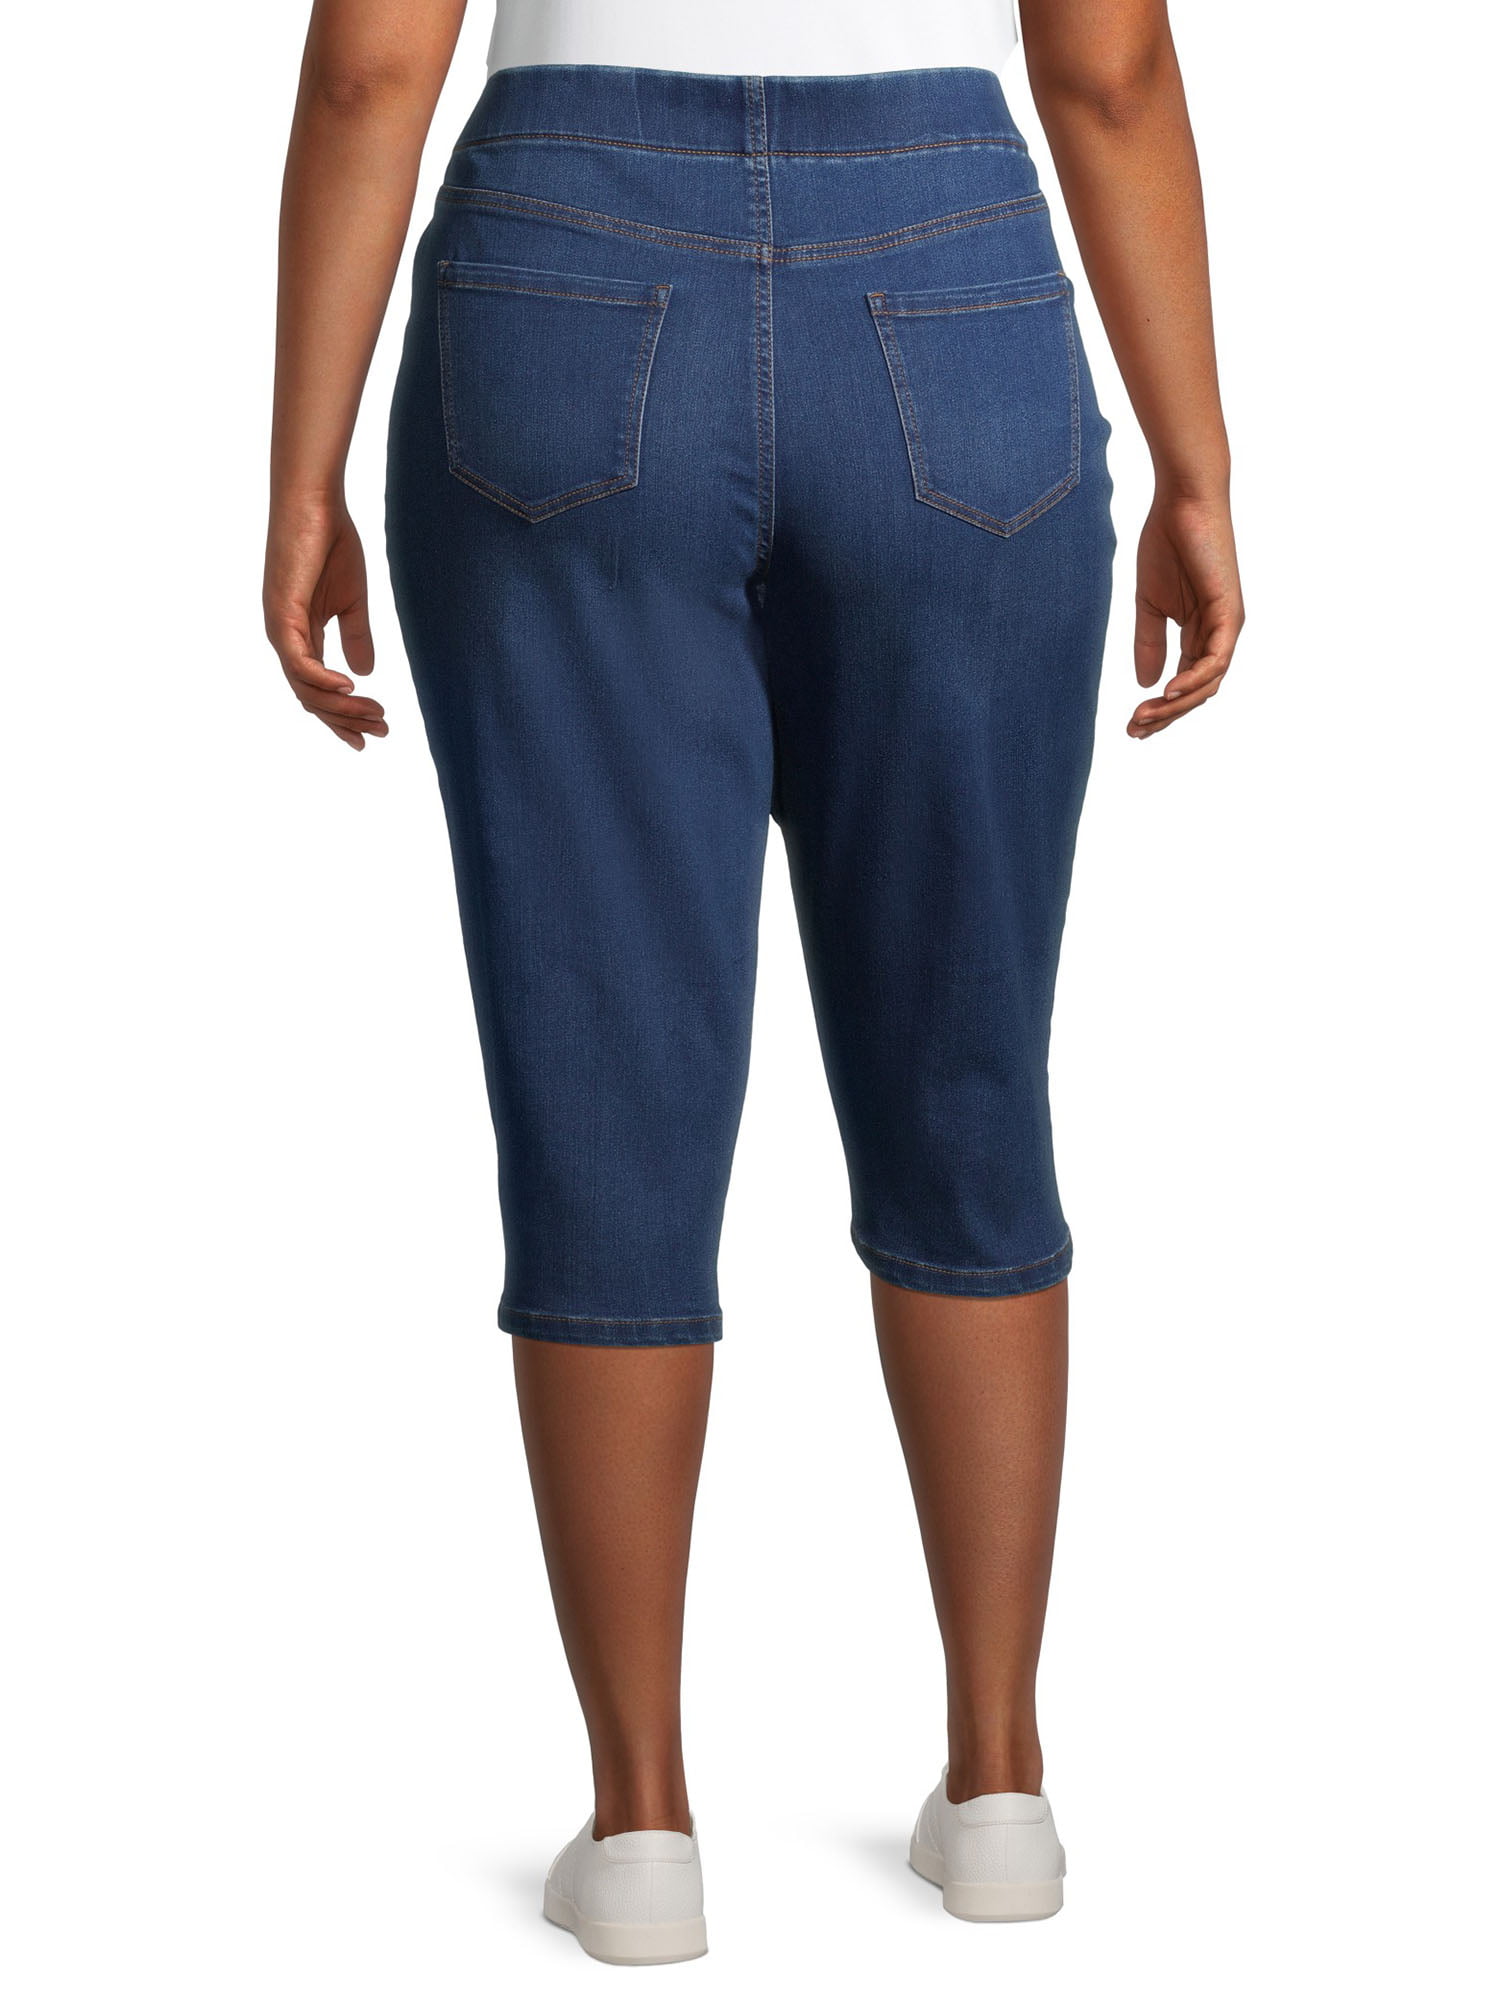 Lot of 10 Women Capri Jeans Pants Plus Size Dark Blue Denim Wholesale Mix  17~24